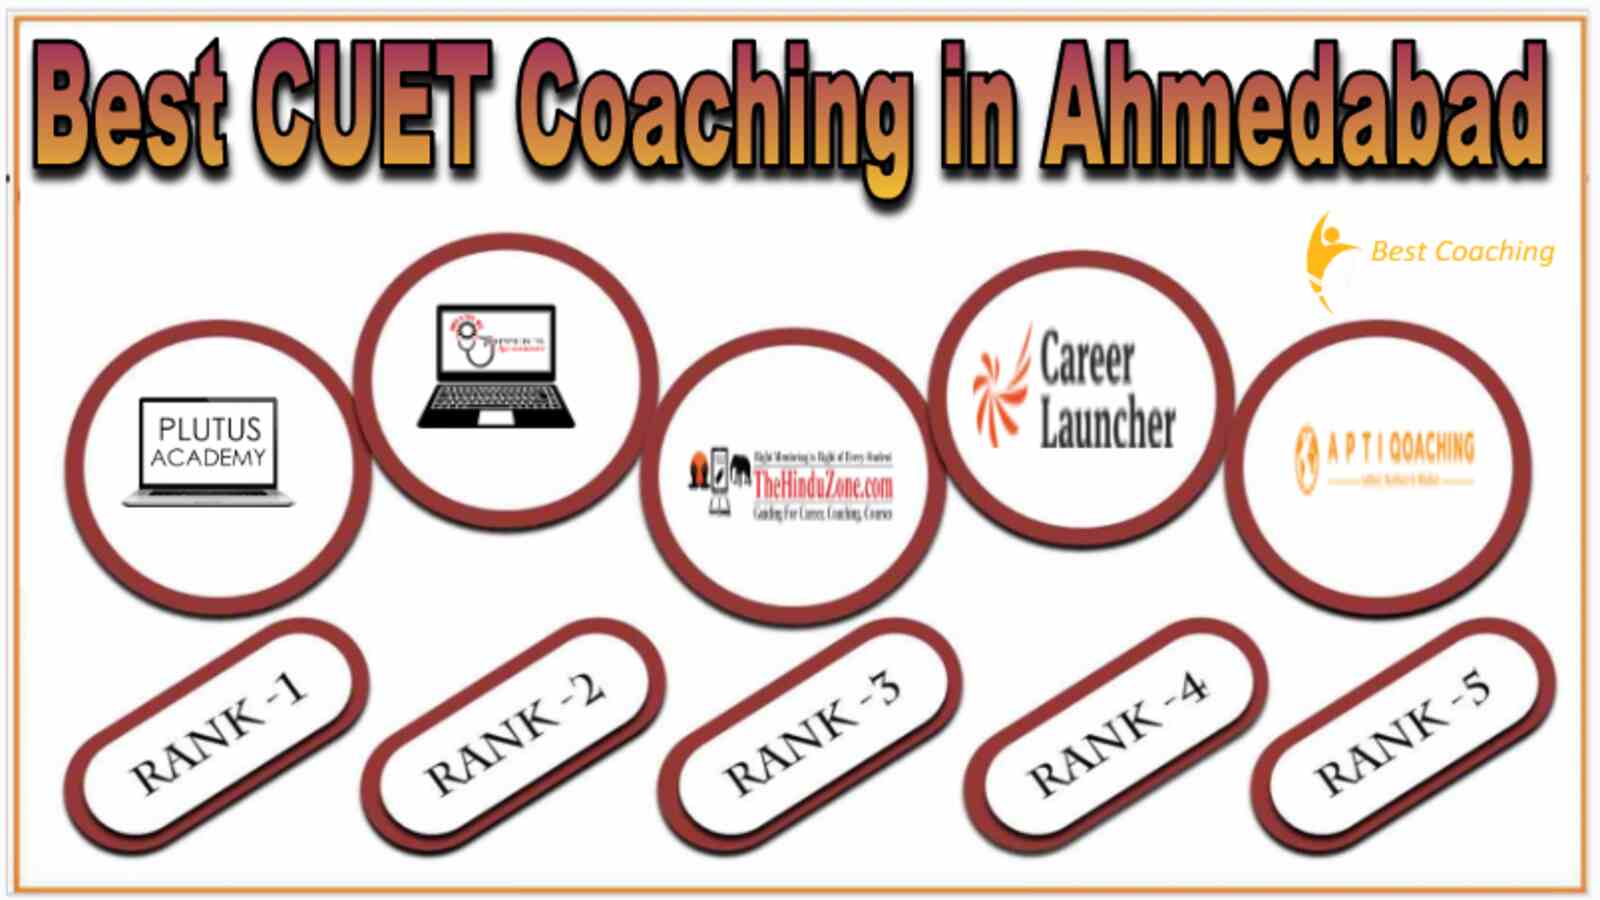 Best CUET Coaching in Ahmedabad